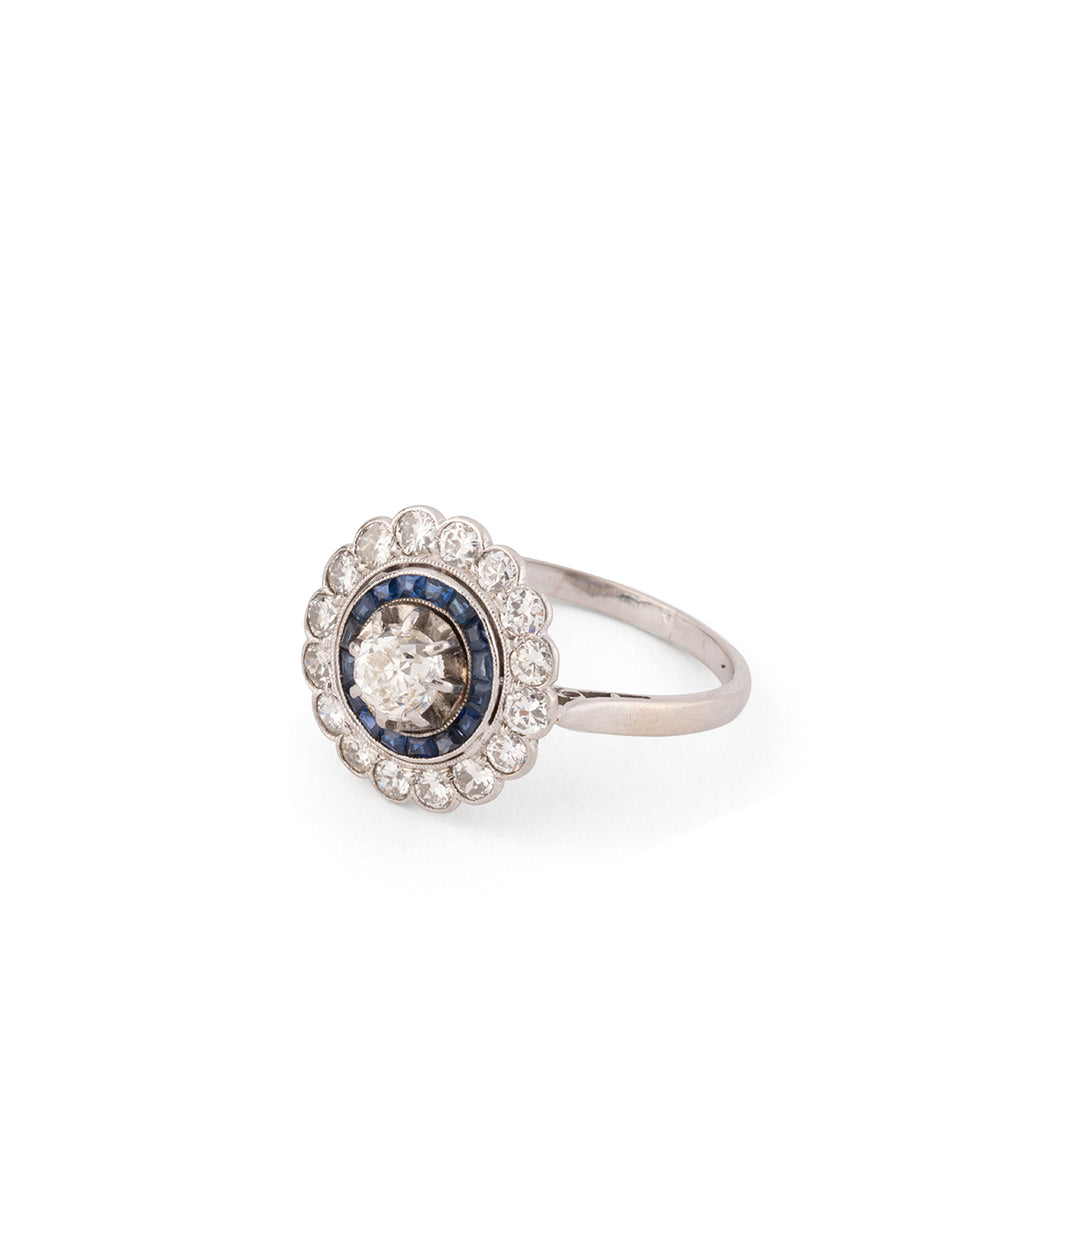 Antique engagement ring sapphire "Jiri" - Caillou Paris